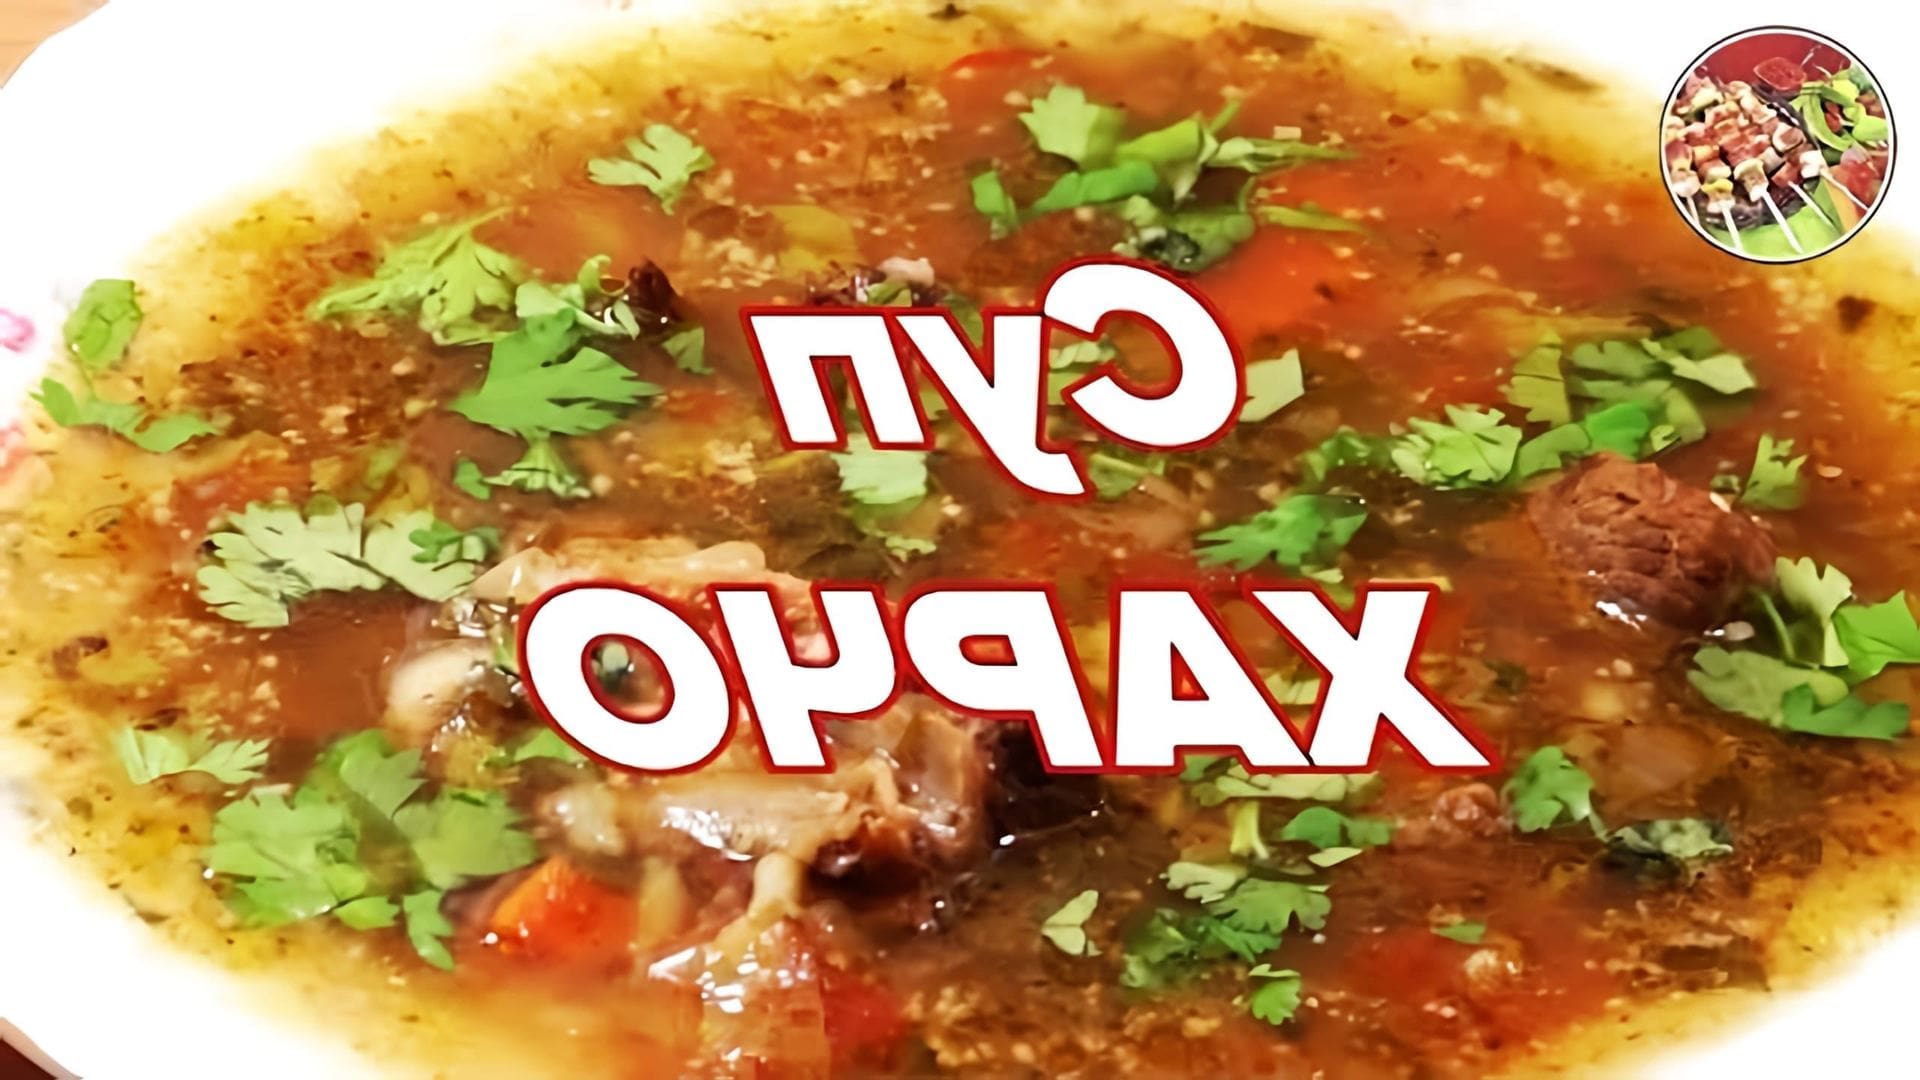 В этом видео демонстрируется процесс приготовления супа Харчо, который является одним из любимых блюд Сталина